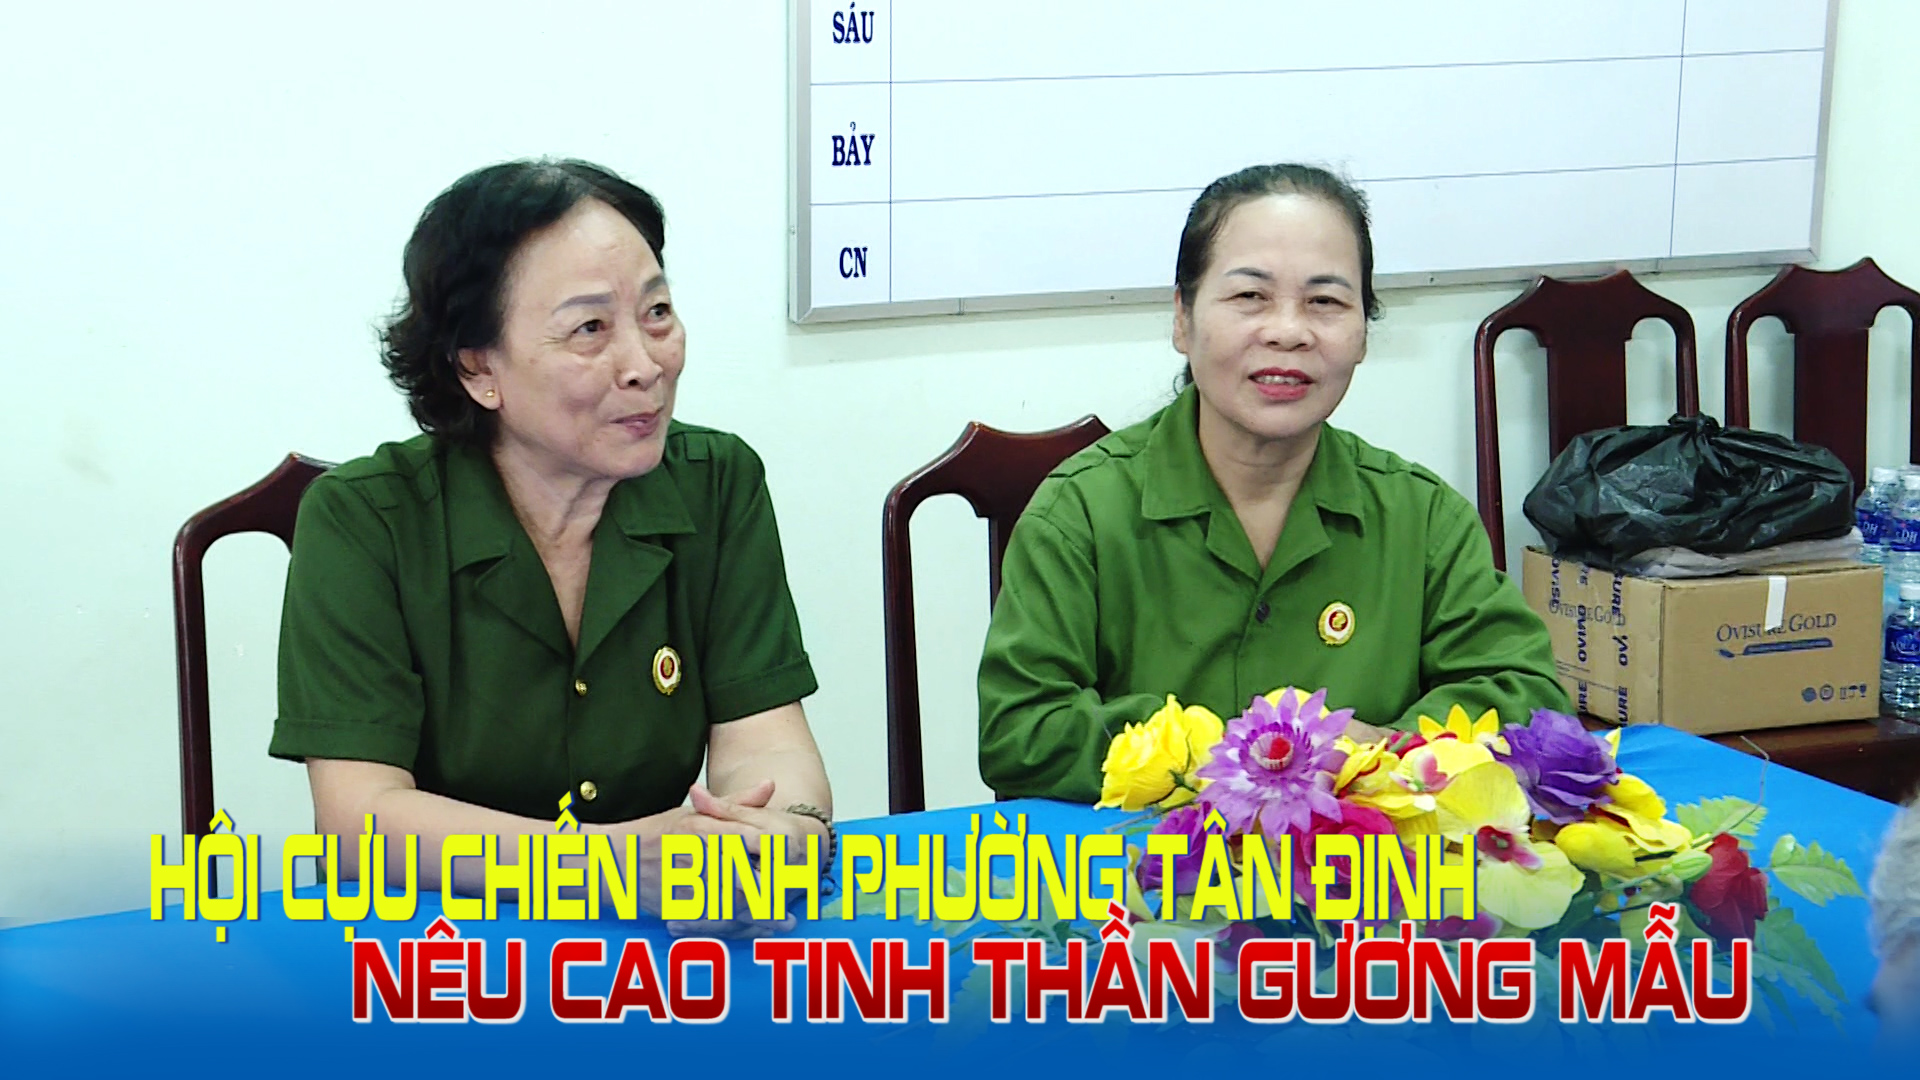 Hội Cựu chiến binh phường Tân Định nêu cao tinh thần gương mẫu